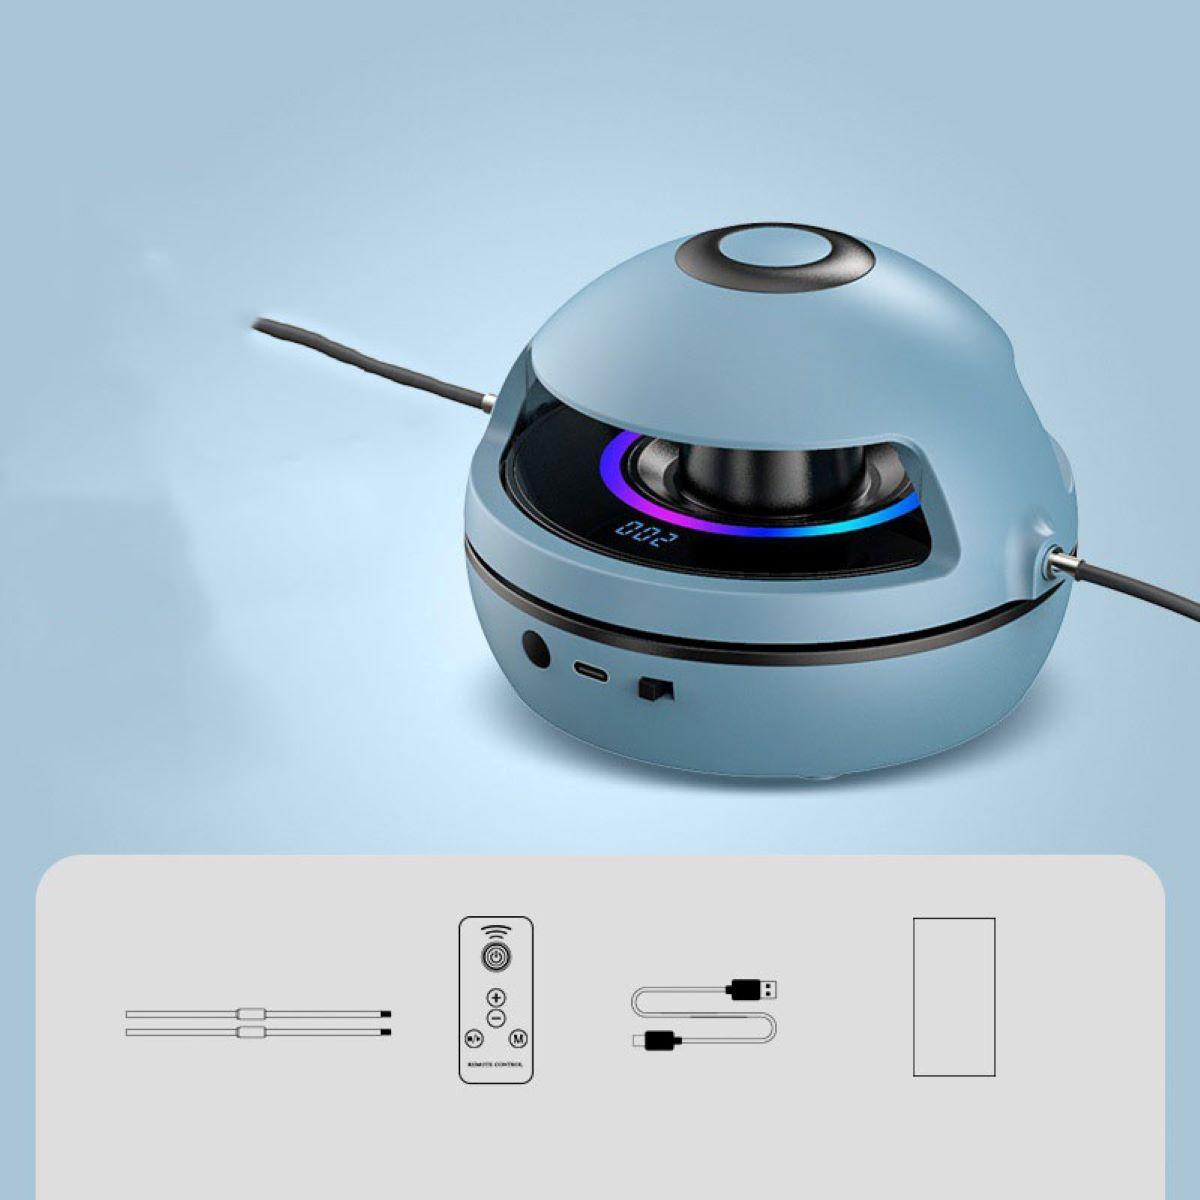 Springseil, beim LACAMAX Genauigkeit Zählen Bluetooth Seilspringmaschine, Fernsteuerung, Blau Siebenfarben-Atemlicht,